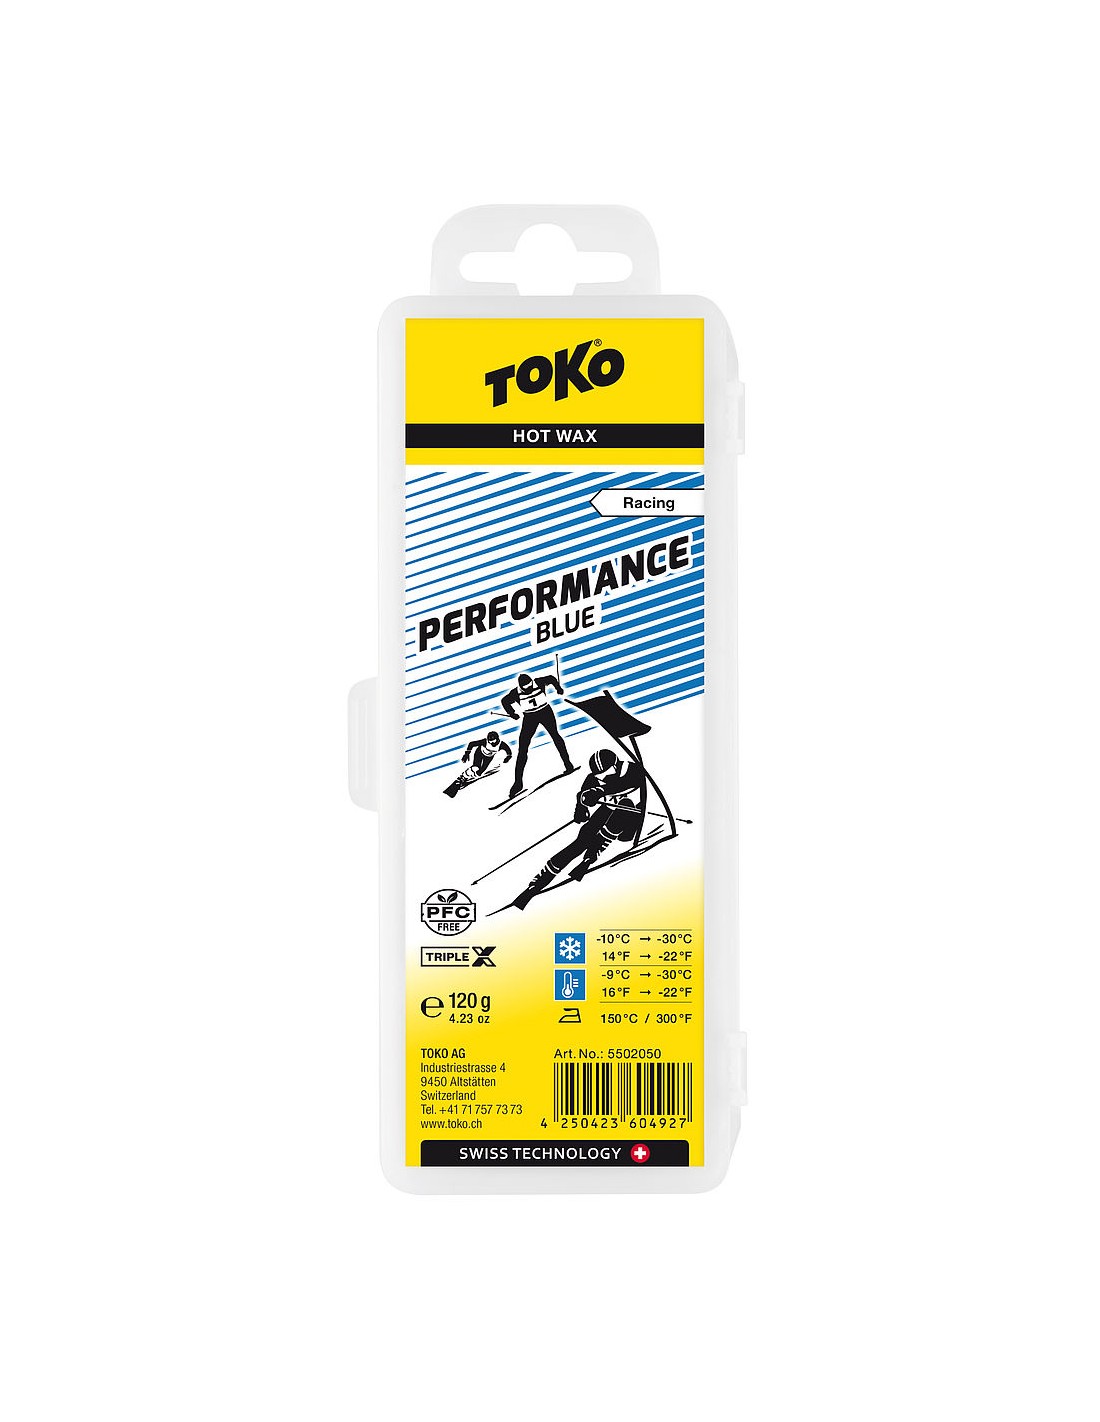 Toko Performance Hot Wax blue Wachs Toko - Toko / -10° bis -30°, Wachsart - Blockwachs, Wachsfarbe - Blau, Einsatzbereich - Alpin, Wachsqualität - Performance, von Toko